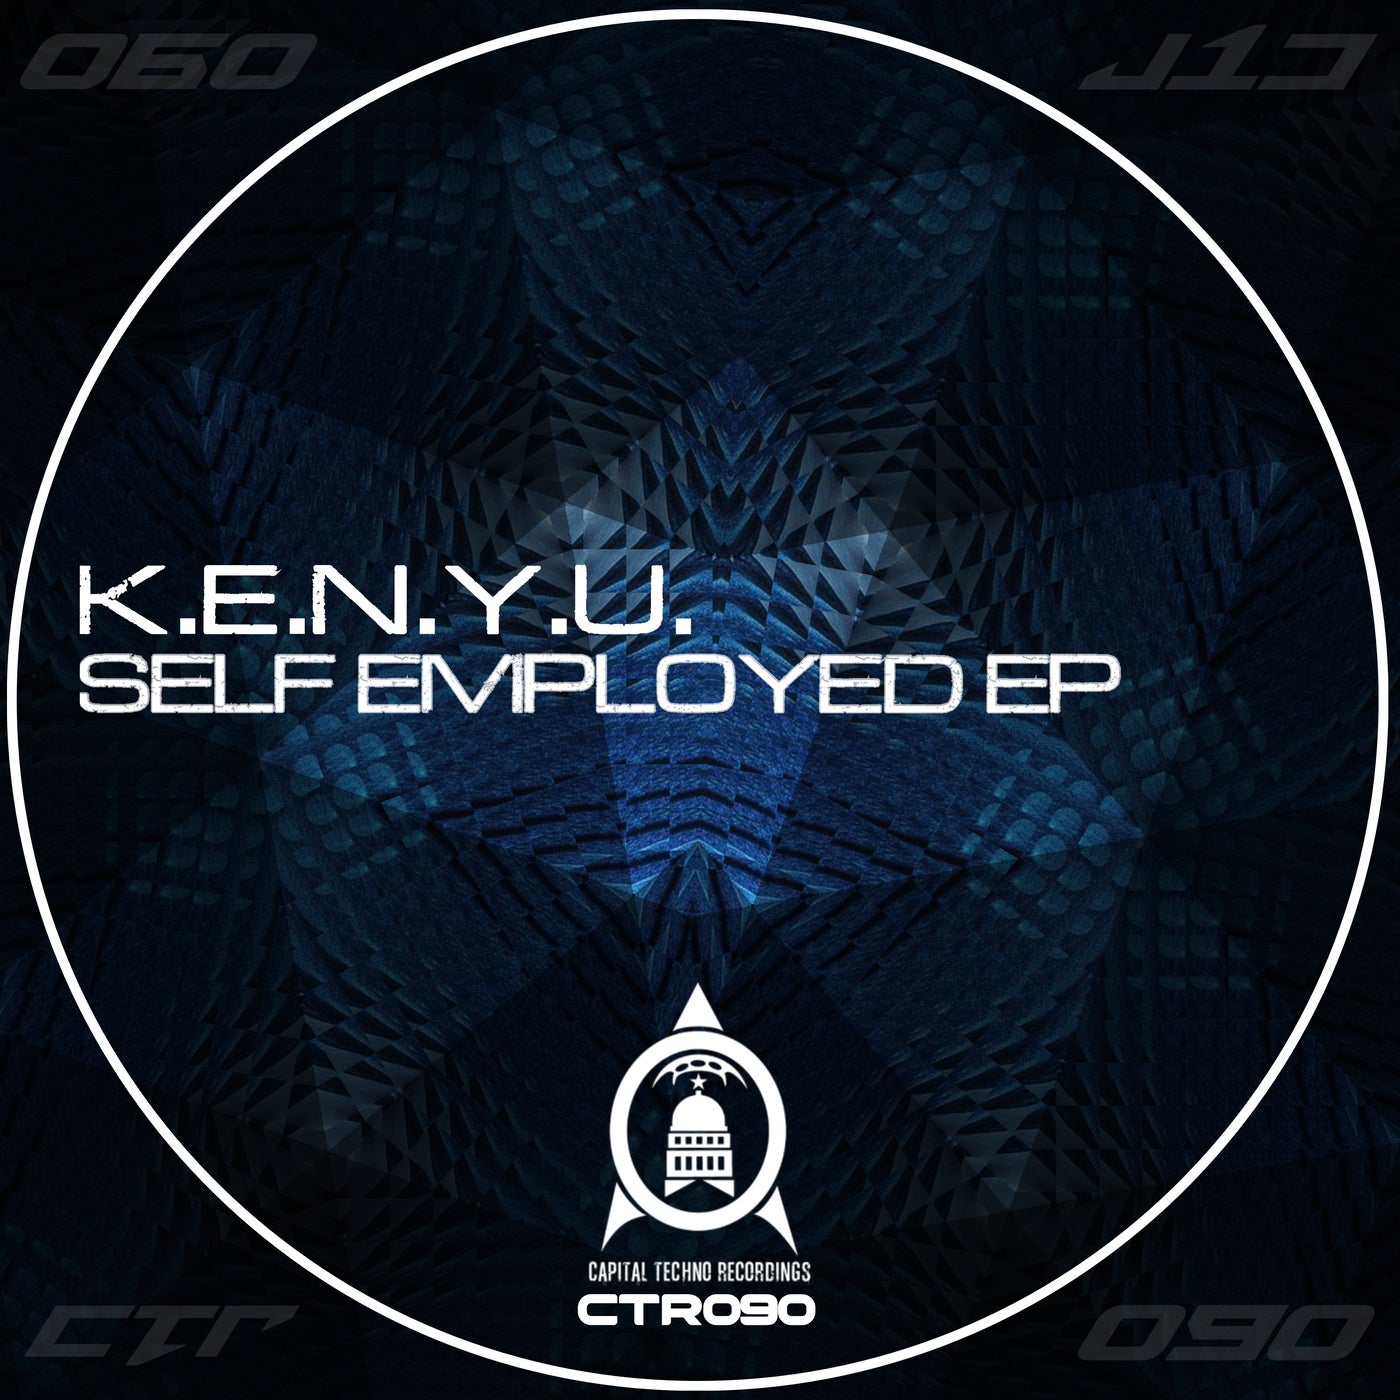 Self Employed EP